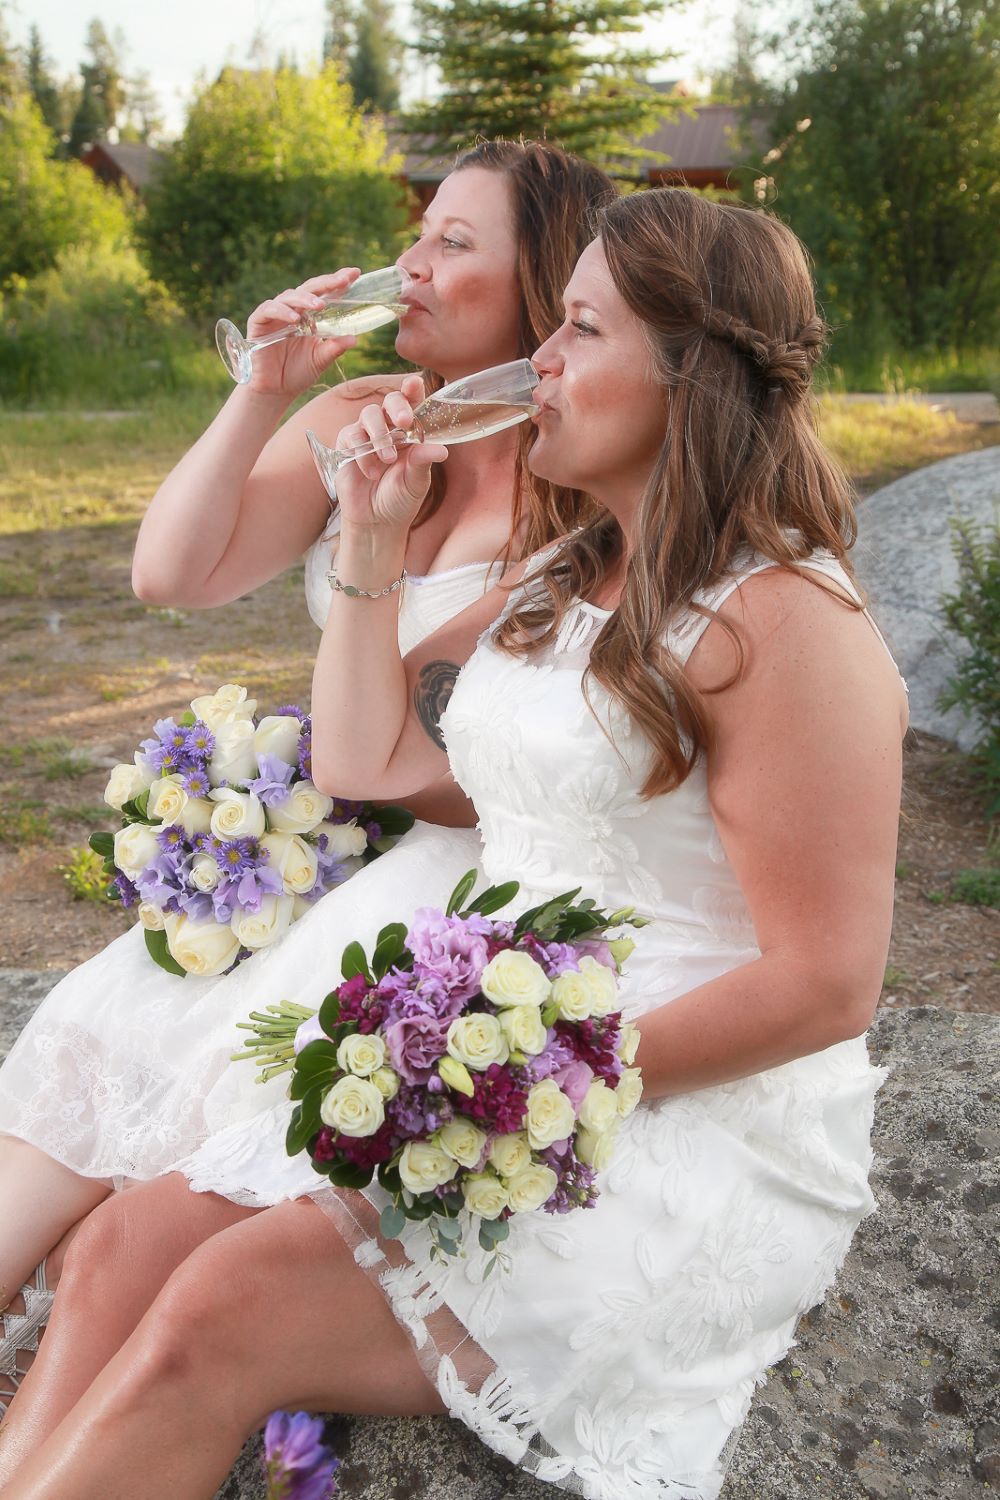 Brides drinking wine